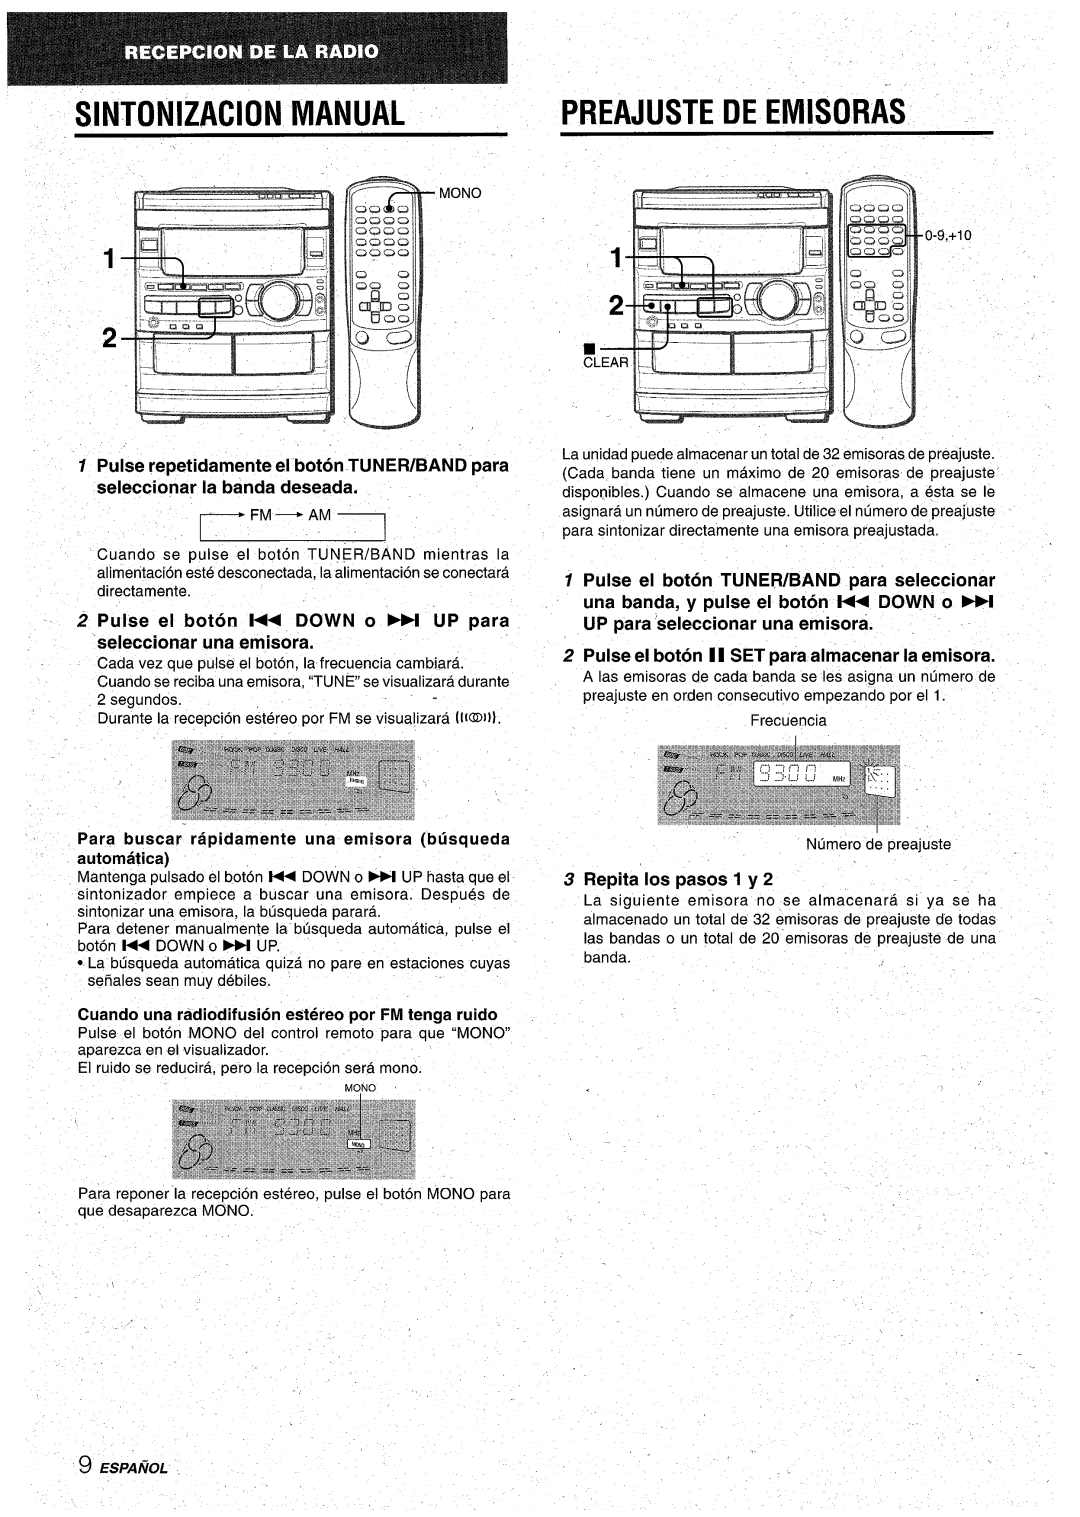 Aiwa CX-NA92 Sintonizacion Manual, Preajuste De Emisoras, Pulse repetidamente el boton TUNERIBAND para, $.Mono, Espamol 